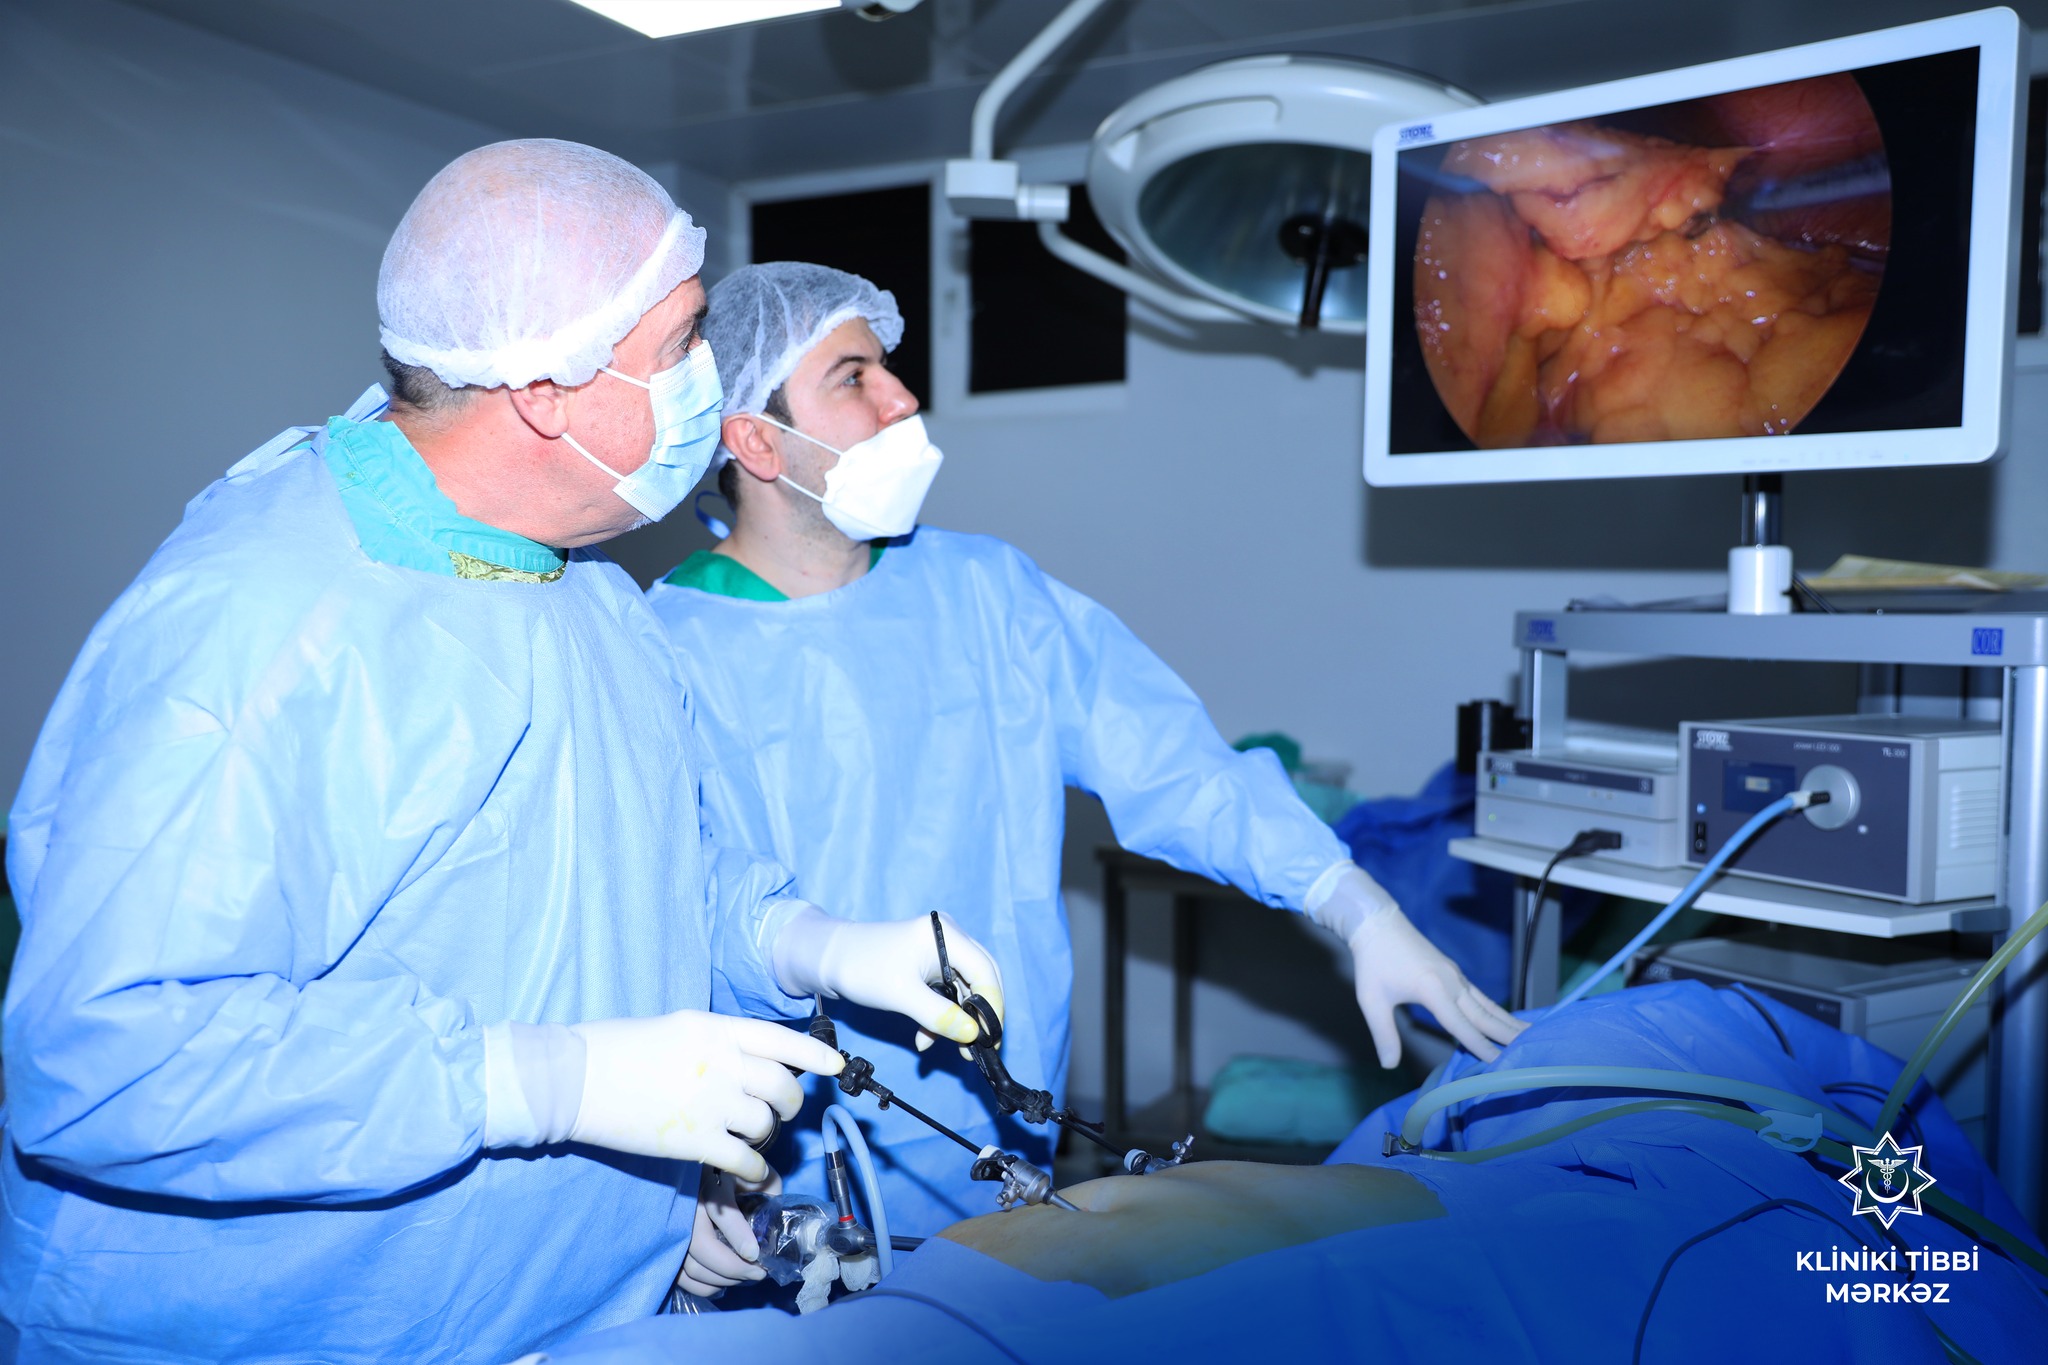  Kliniki Tibbi Mərkəzdə 60 yaşlı xəstə üzərində laparoskopik əməliyyat icra edilib   